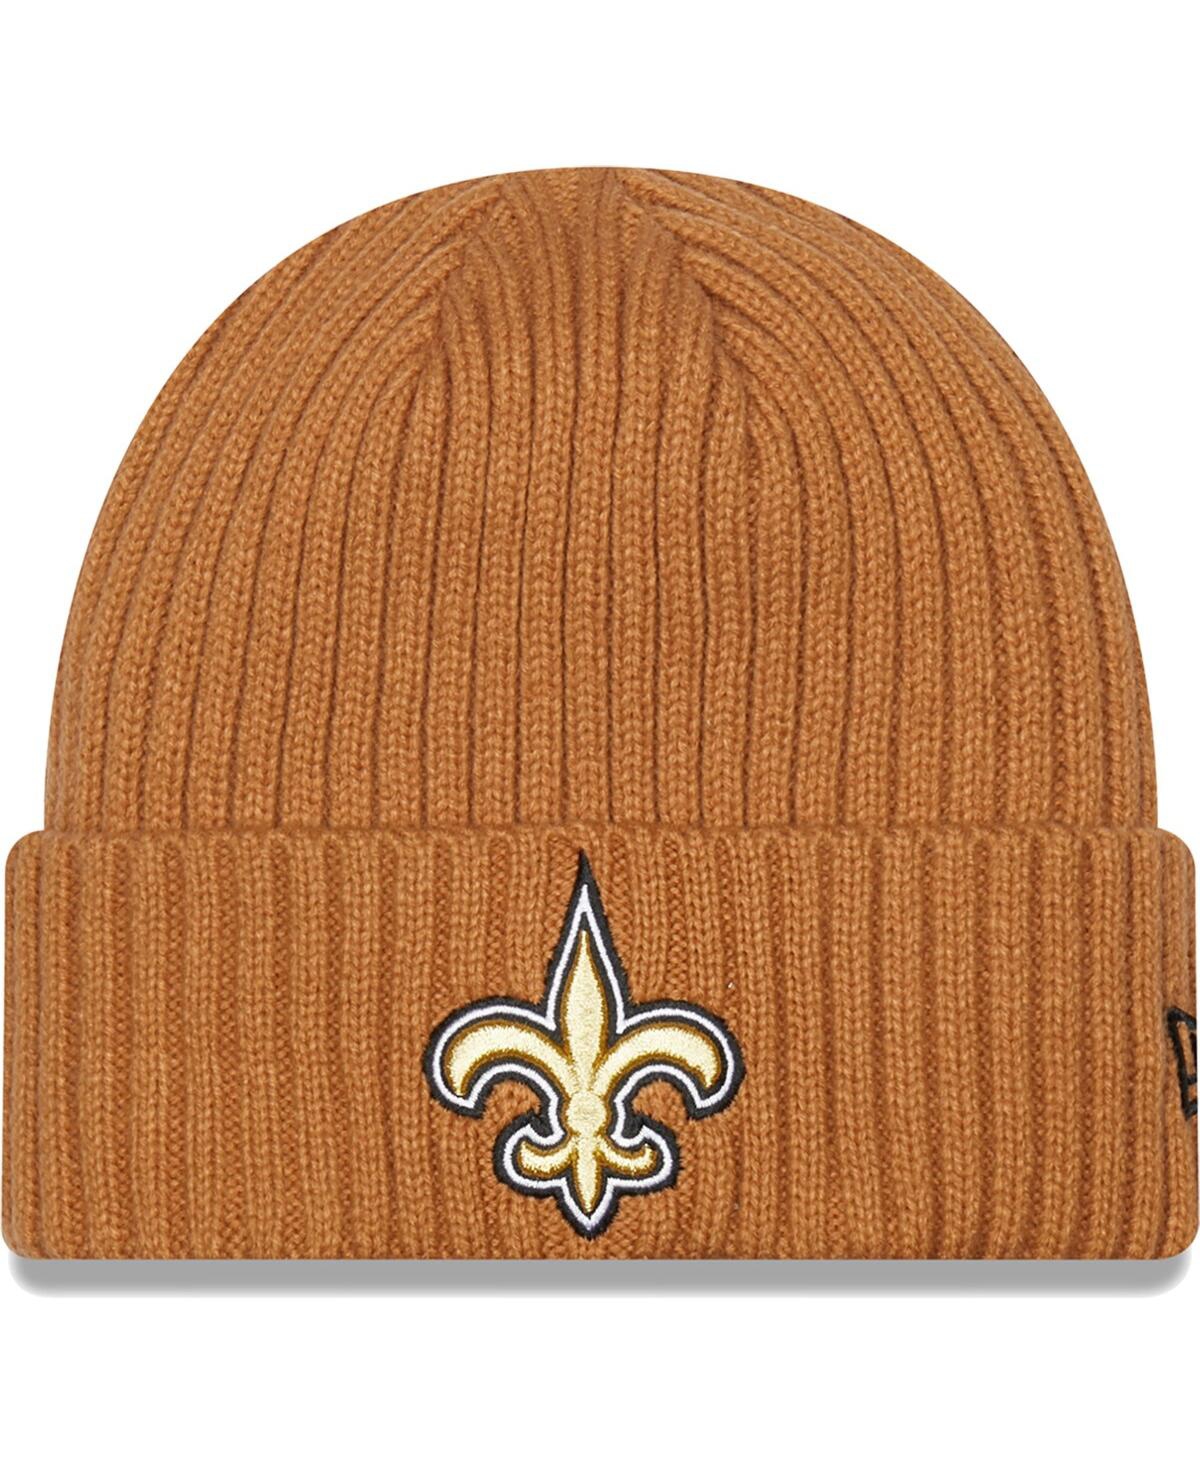 Shop New Era Men's  Brown New Orleans Saints Core Classic Cuffed Knit Hat